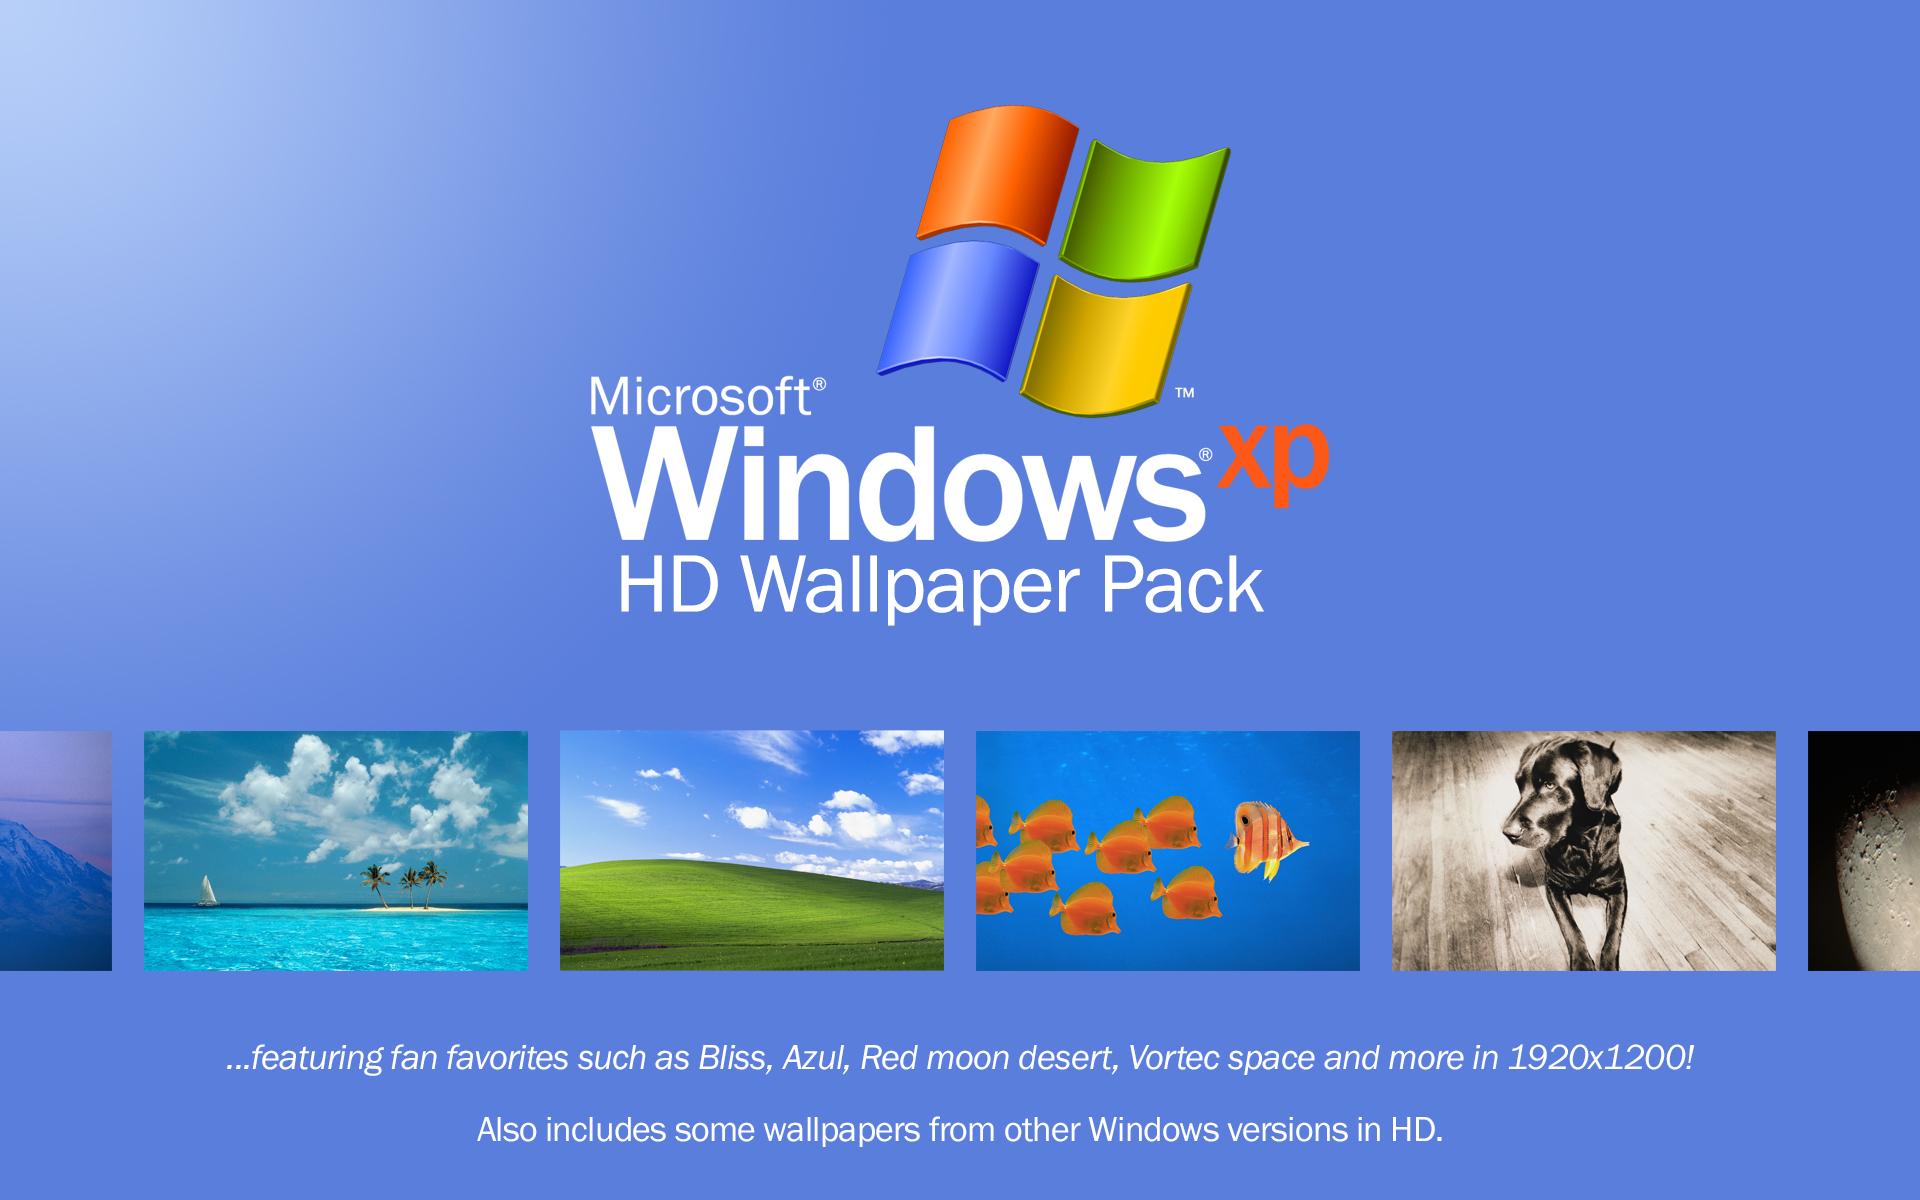 Bạn yêu thích cảm giác thơ mộng và đầy hứng khởi của Windows XP? Hãy cập nhật với bản HD wallpaper pack mới nhất để tái hiện lại những khoảnh khắc tuyệt vời đó trong không gian làm việc của mình.